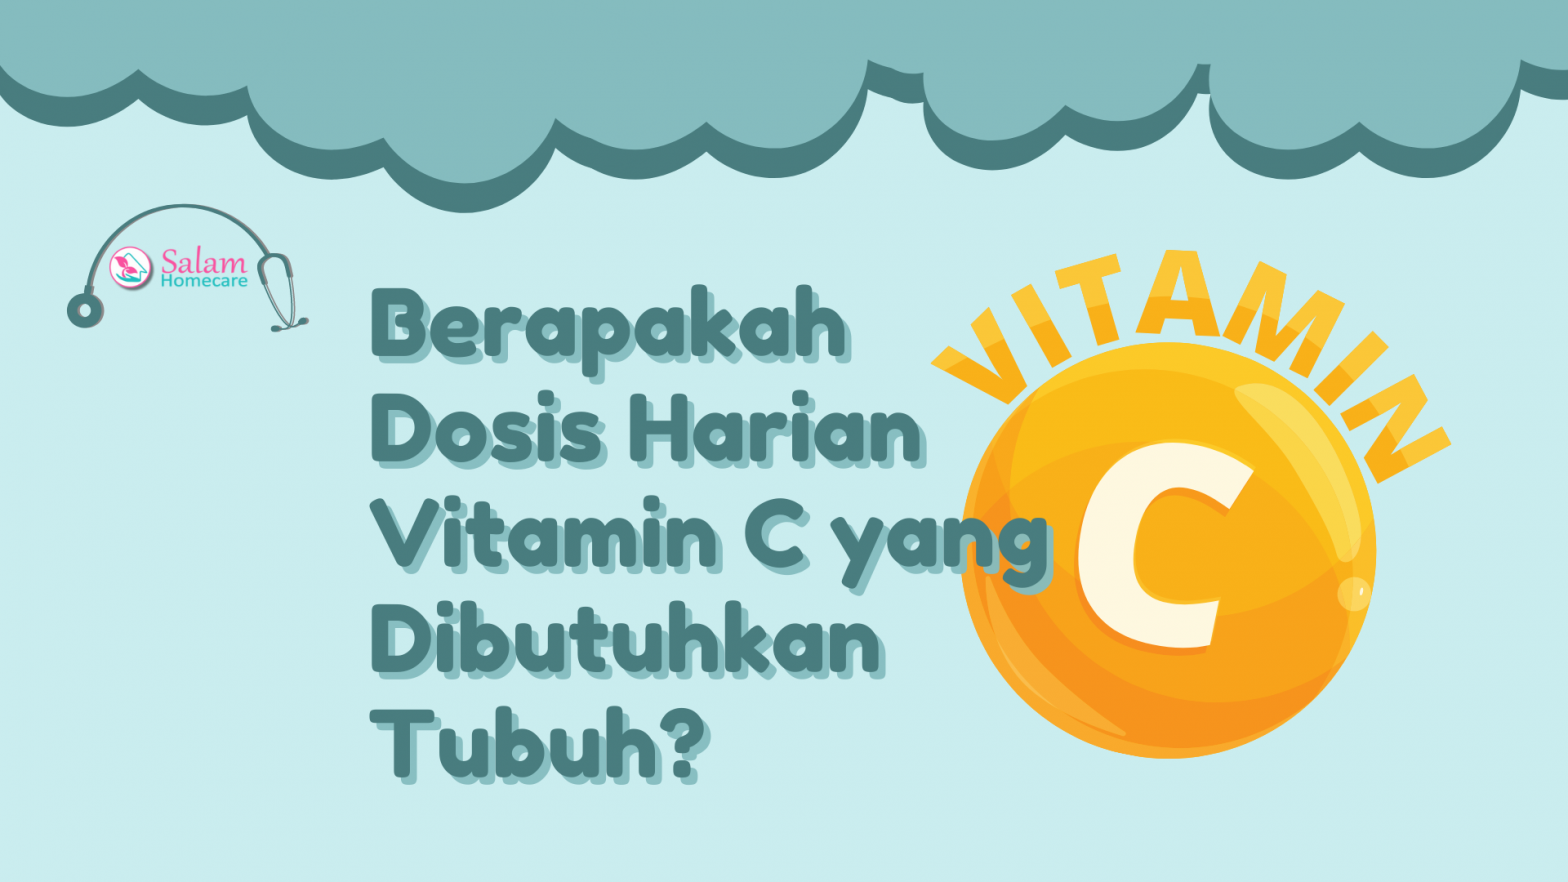 Berapakah Dosis Harian Vitamin C yang Dibutuhkan Tubuh?